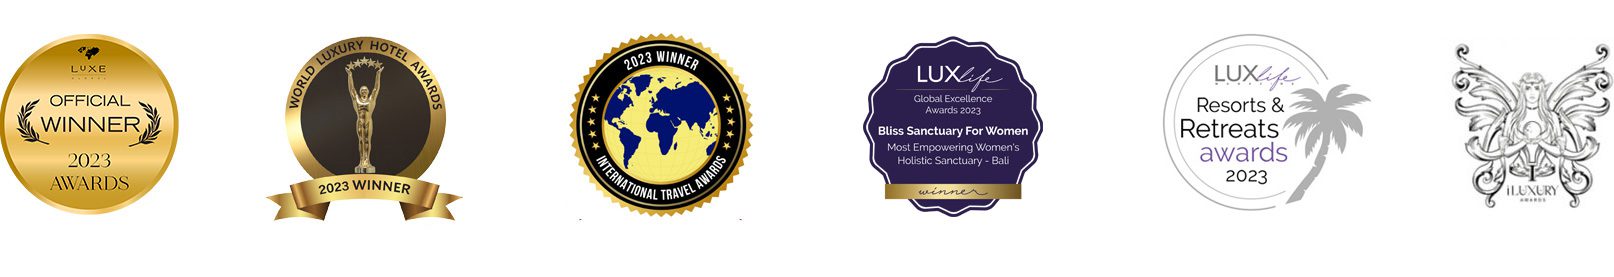 Bliss Sanctuary for Women awards logos 2023